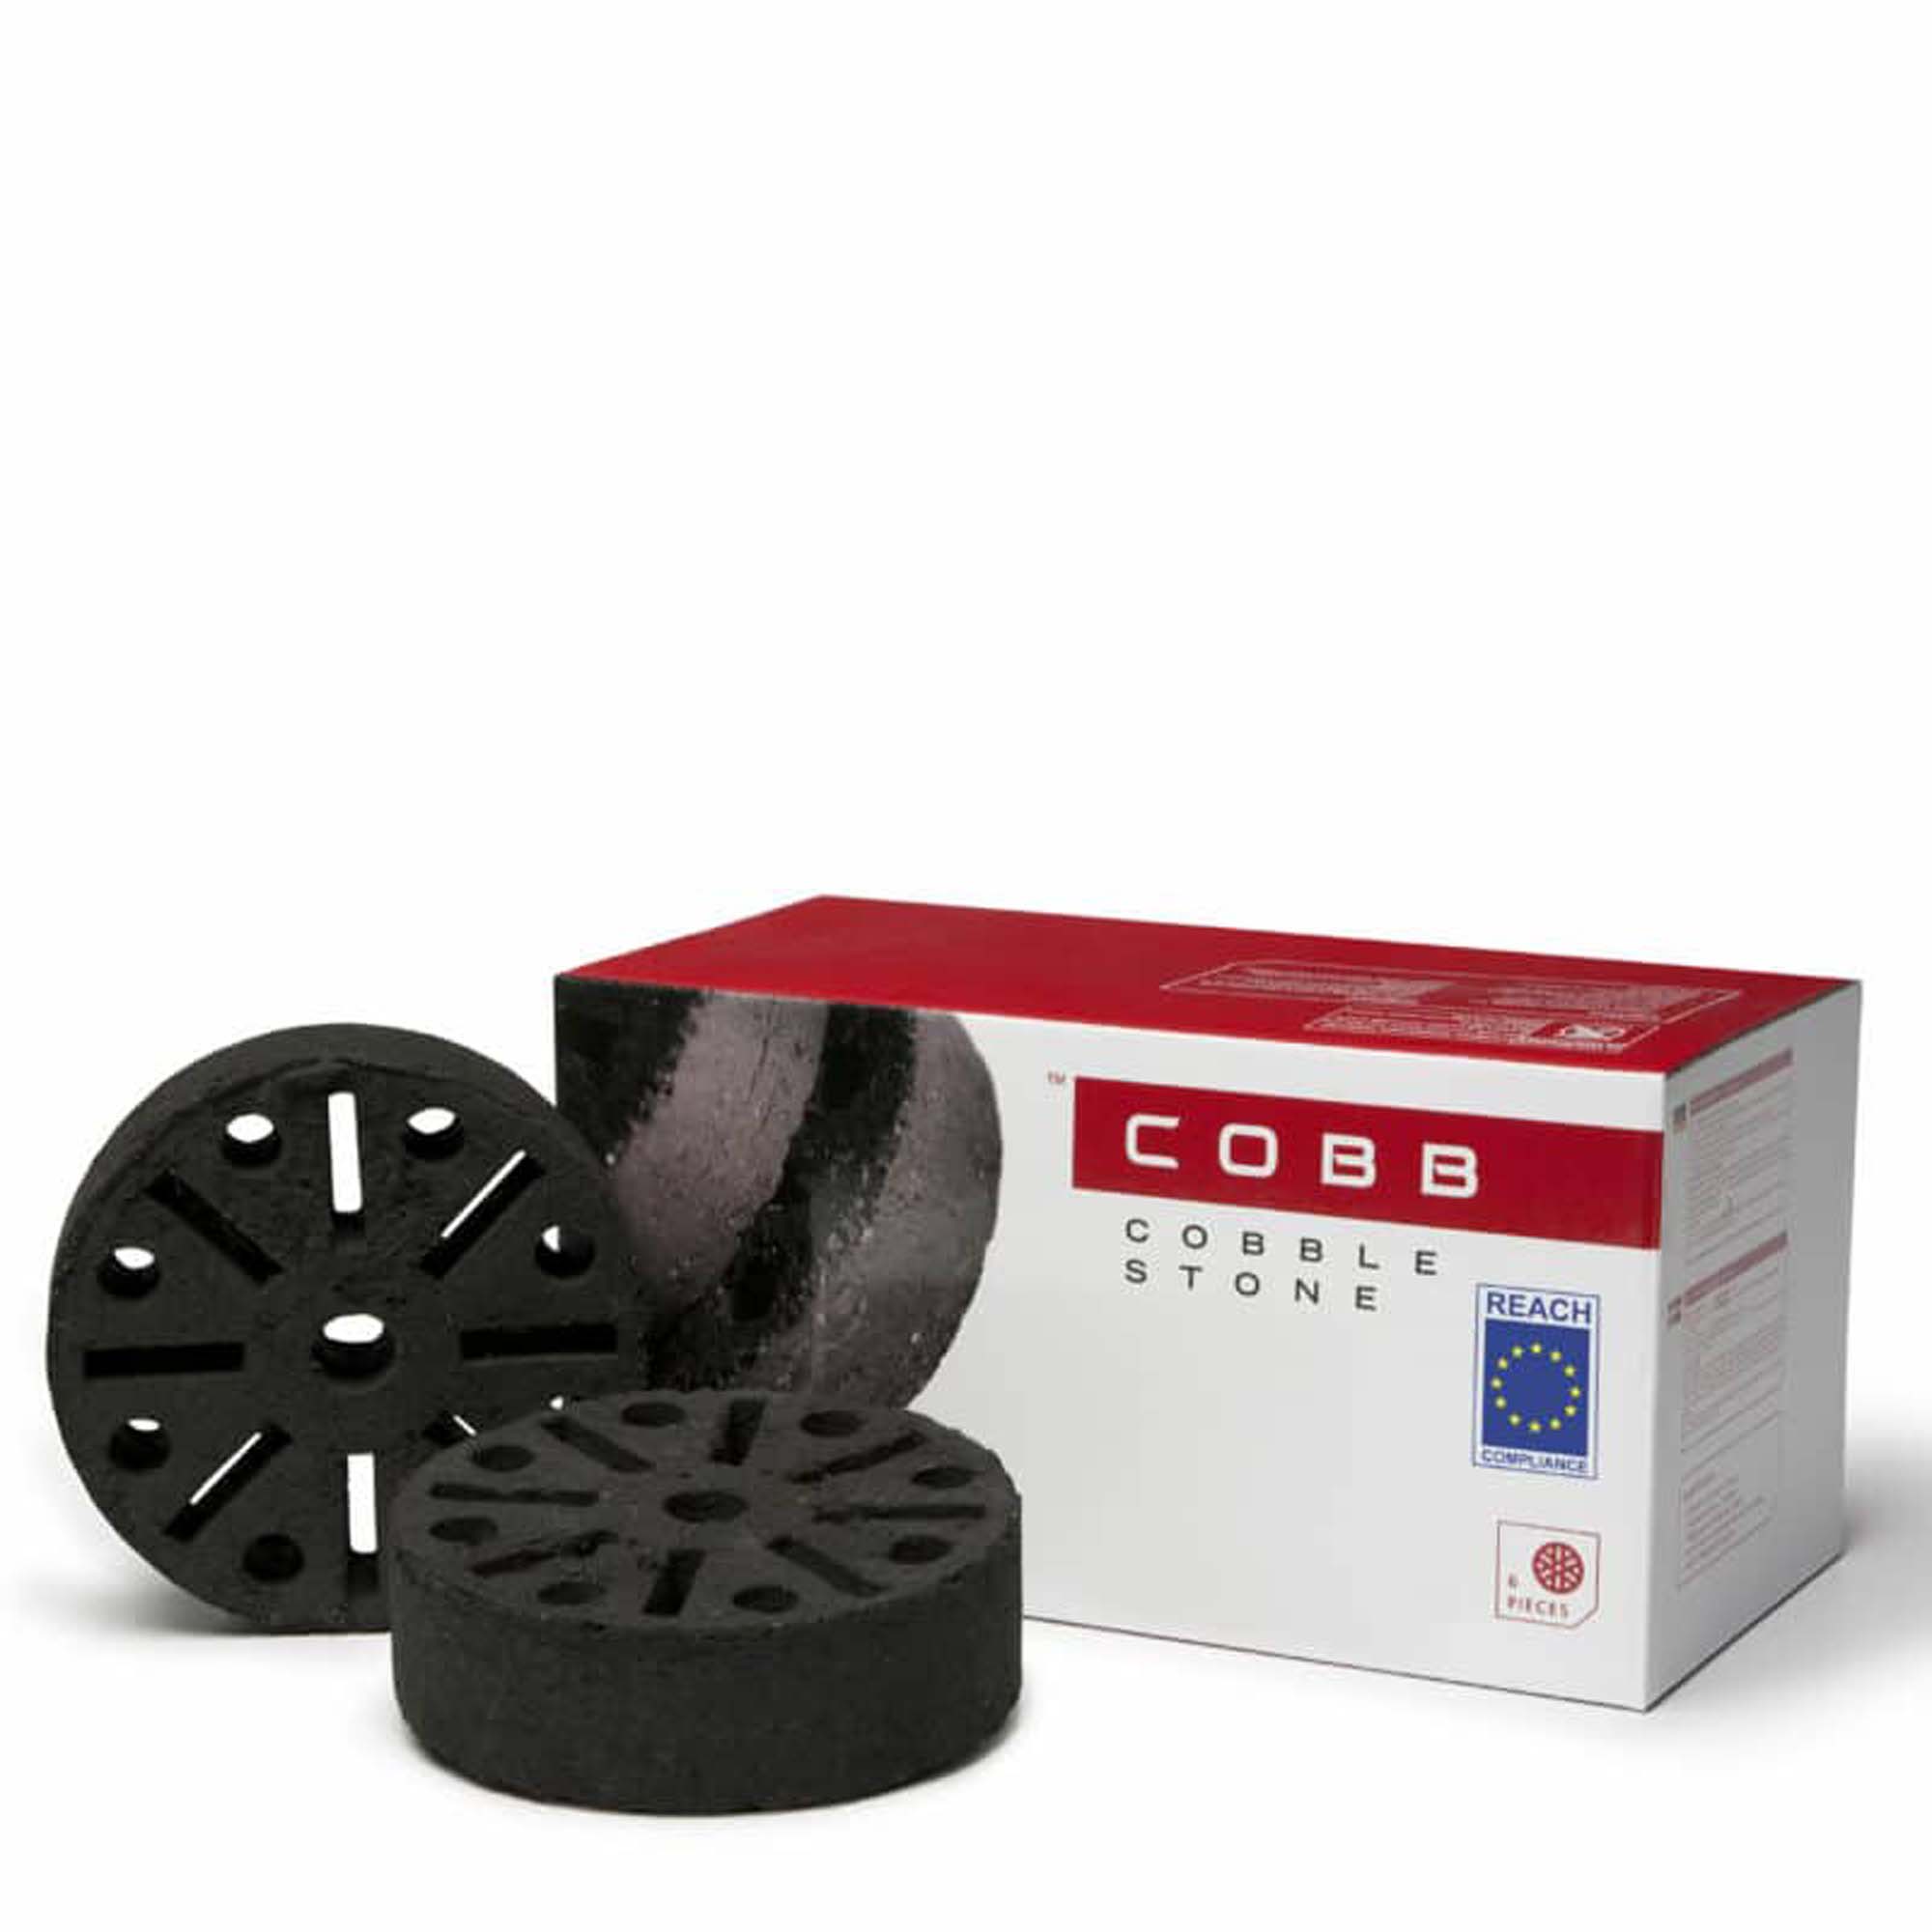 COBB Cobble Stone Pak